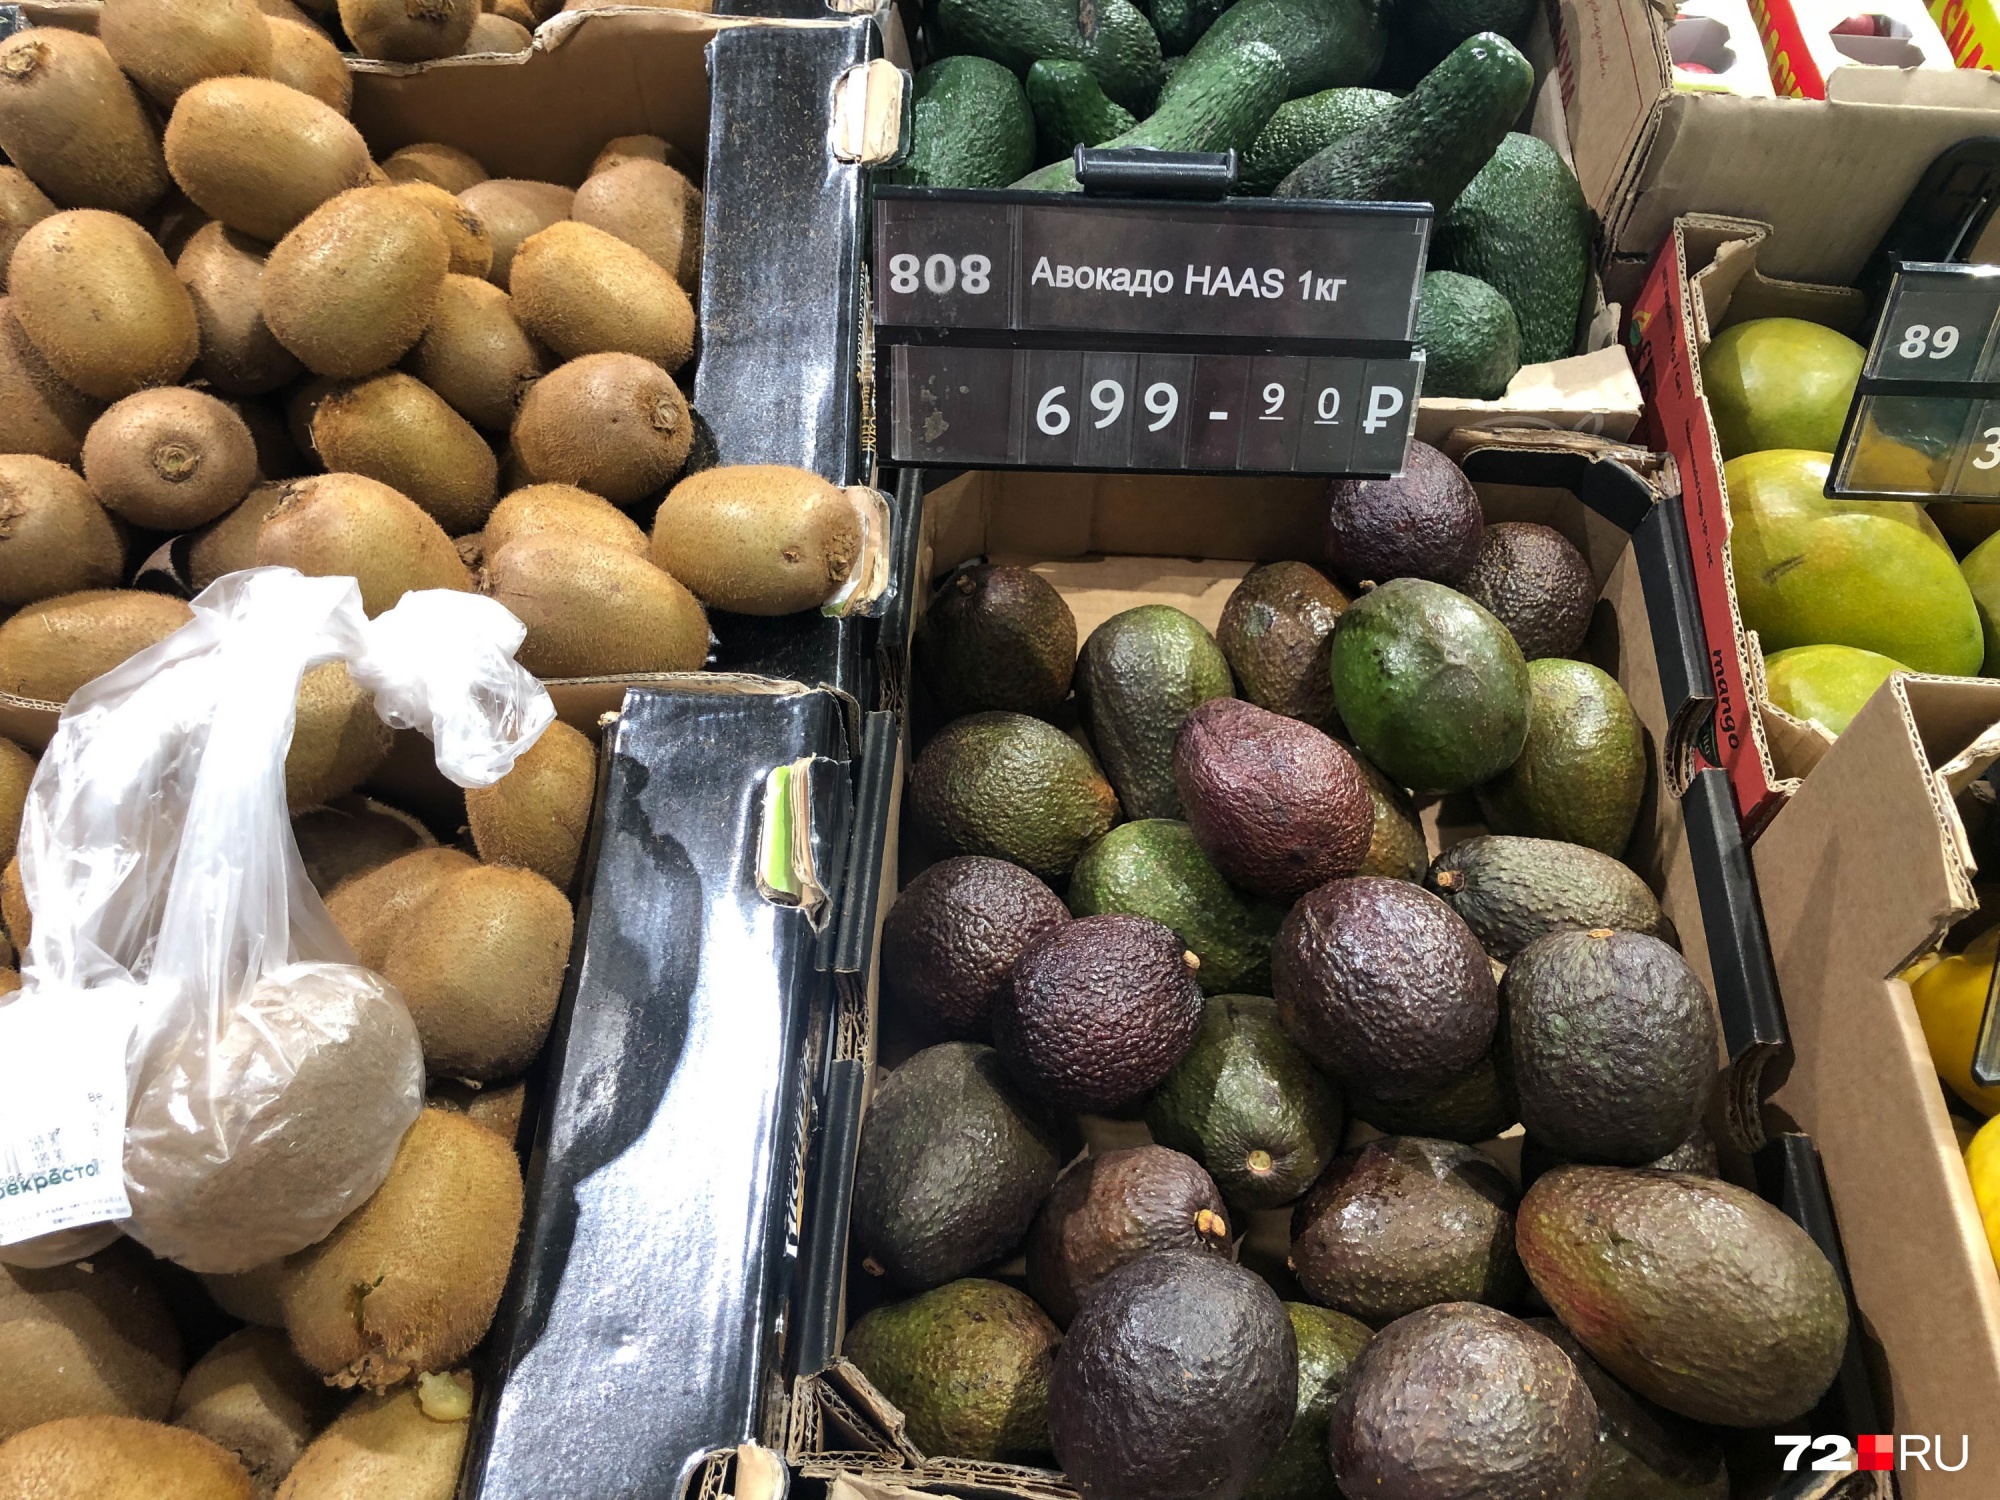 Сорт авокадо хаас никогда не был дешевым. Для тех, кто любит этот фрукт: сейчас в «Перекрестке» его продают по 700 рублей за килограмм